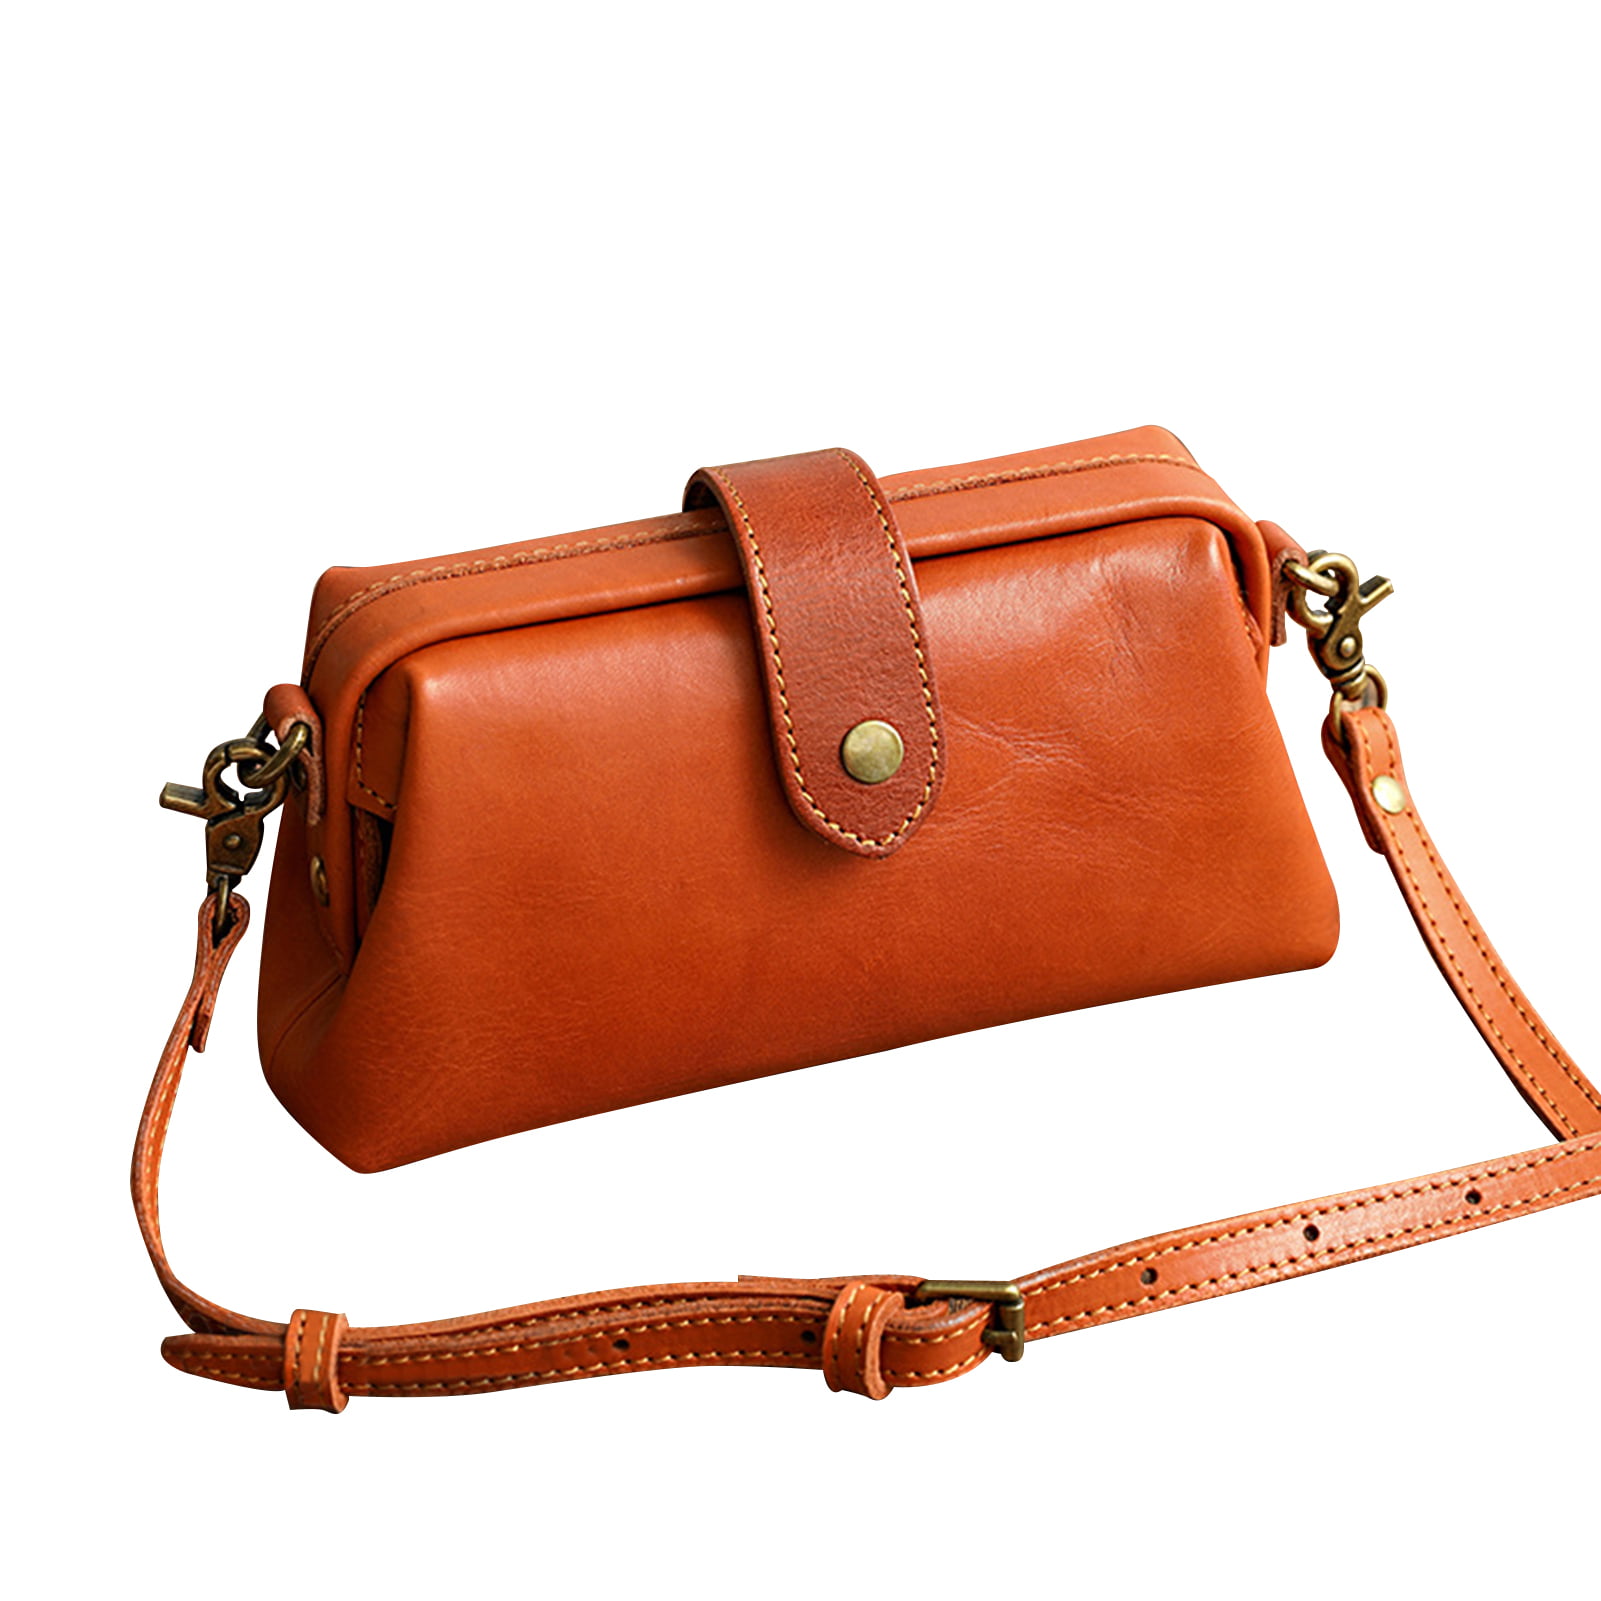 Details about   New Vintage Womens Genuine Real Leather Handbag Shoulder Bag Satchel Messenger 